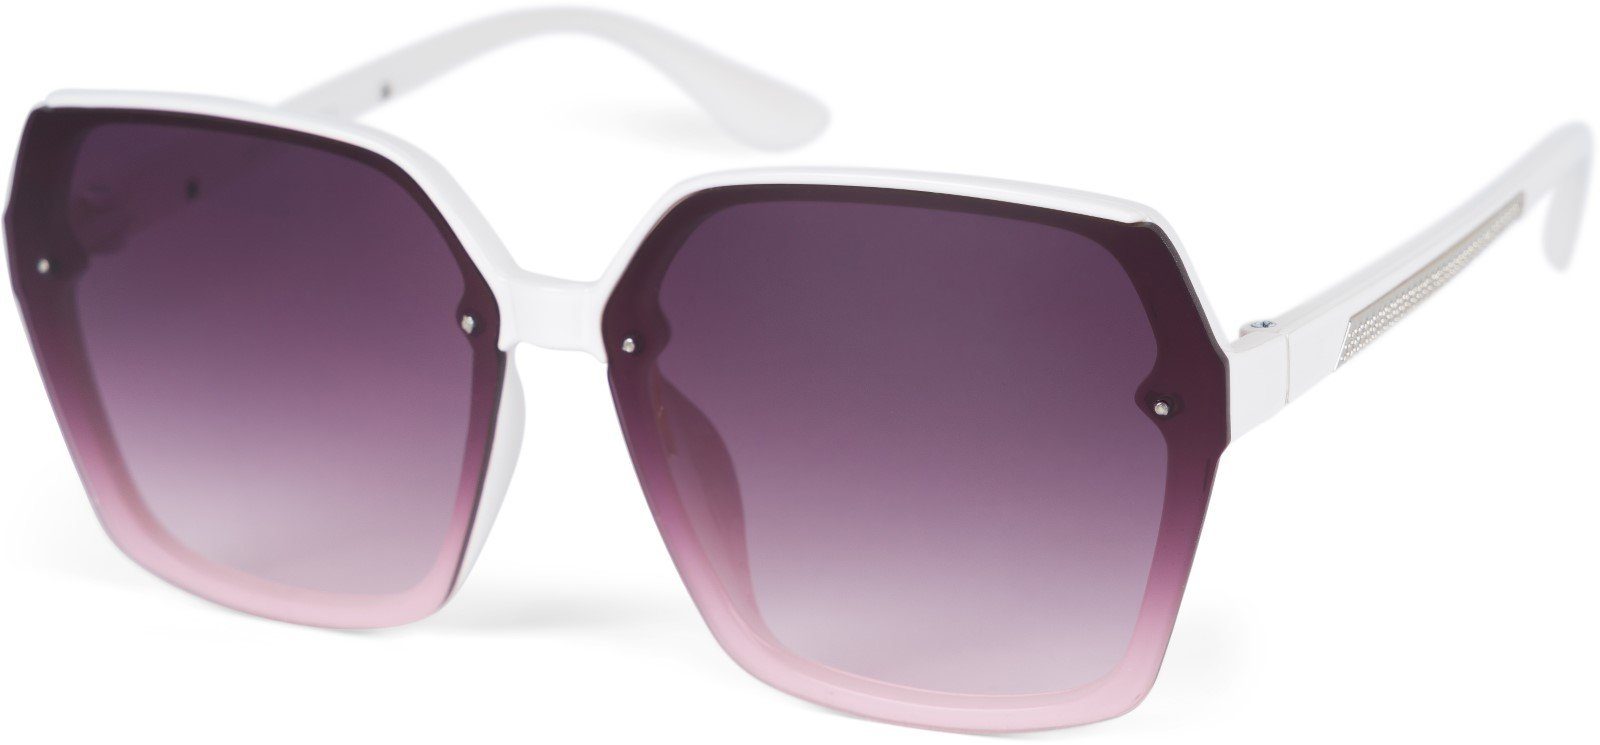 Sonnenbrillen OTTO online kaufen | Bench.